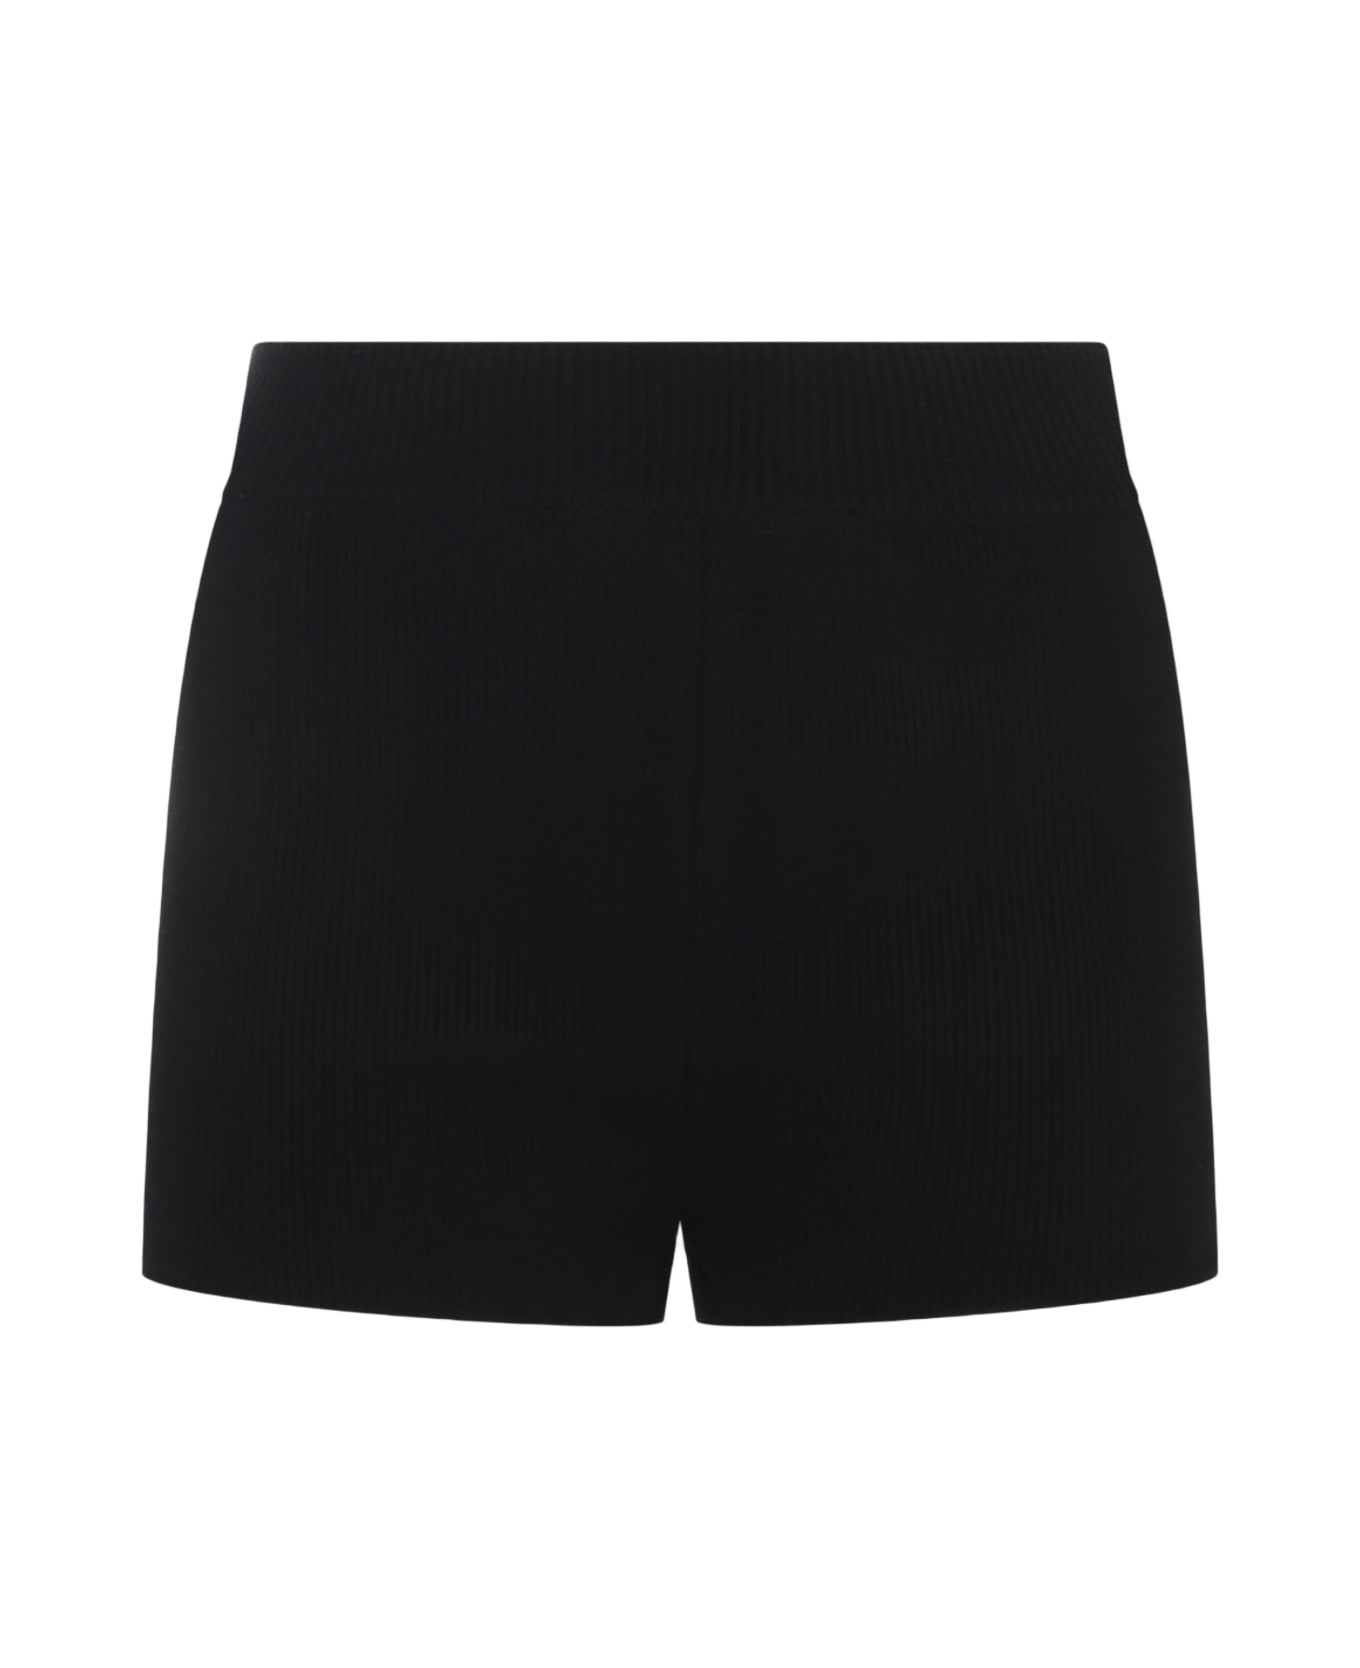 Ami Alexandre Mattiussi Black Cotton Shorts - Black ショートパンツ